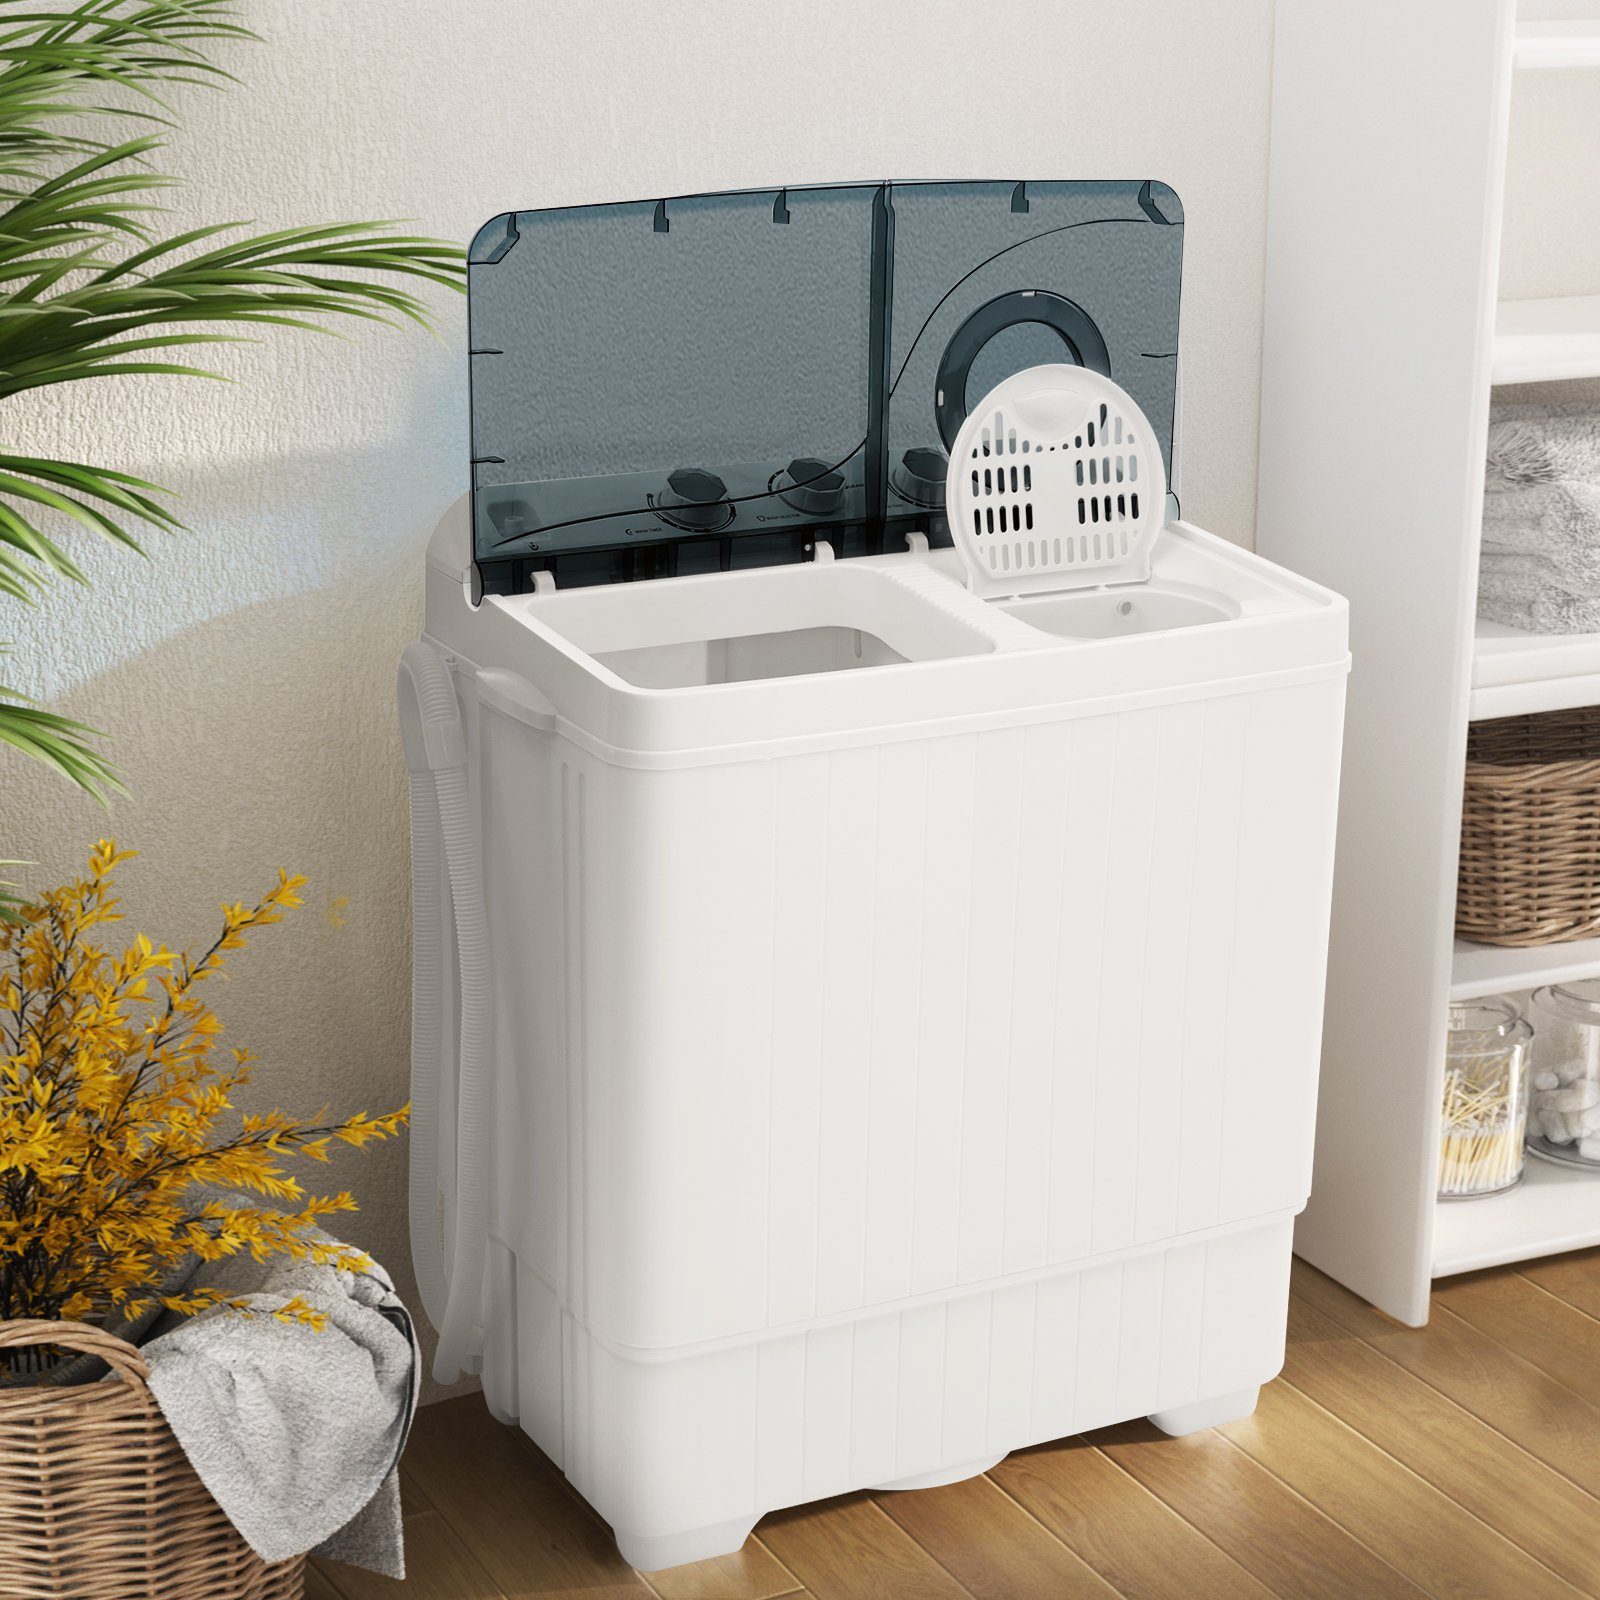 COSTWAY Waschmaschine Toplader 6.5 1320 Schwarz, kg, Weiß U/min FP10366DE/XPB65-2368S